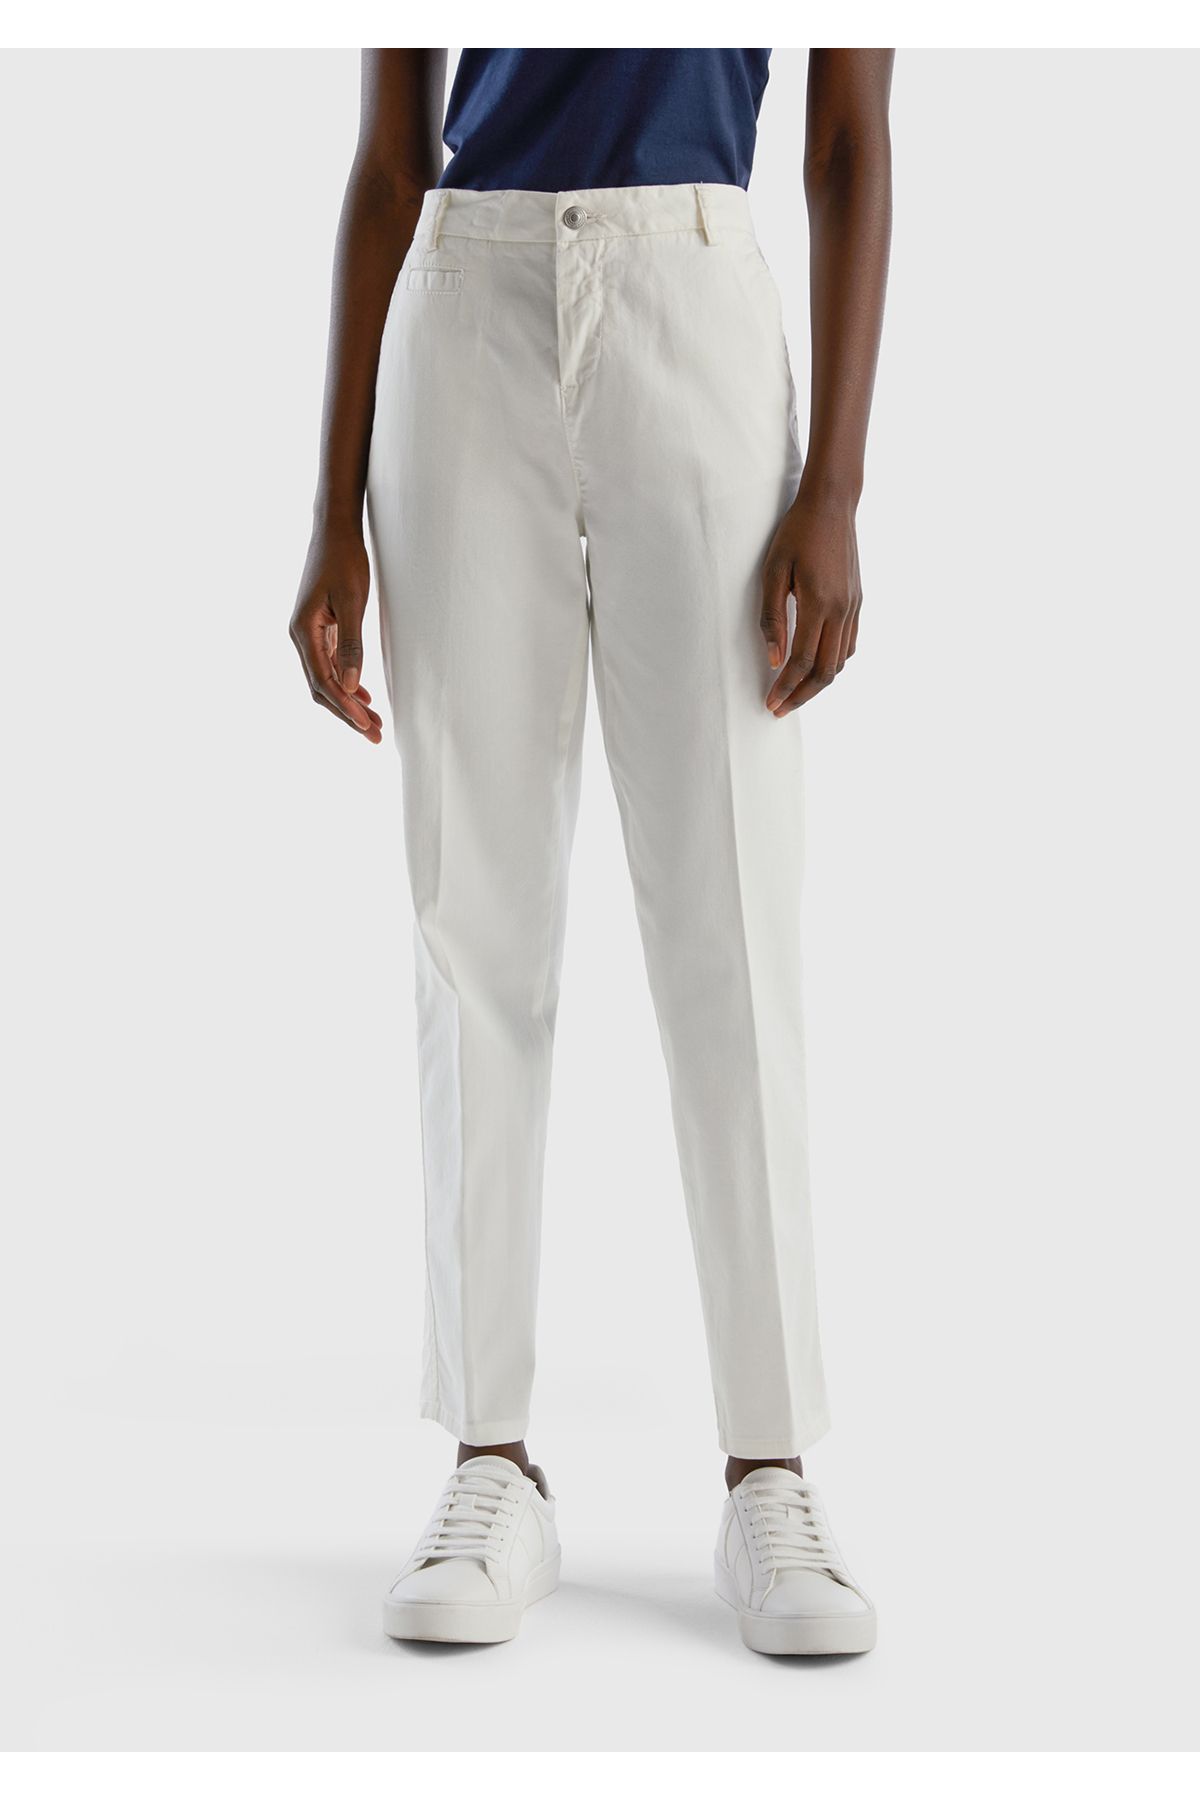 United Colors of Benetton Kadın Bej Elastanlı Basic Chino Pantolon Beyaz